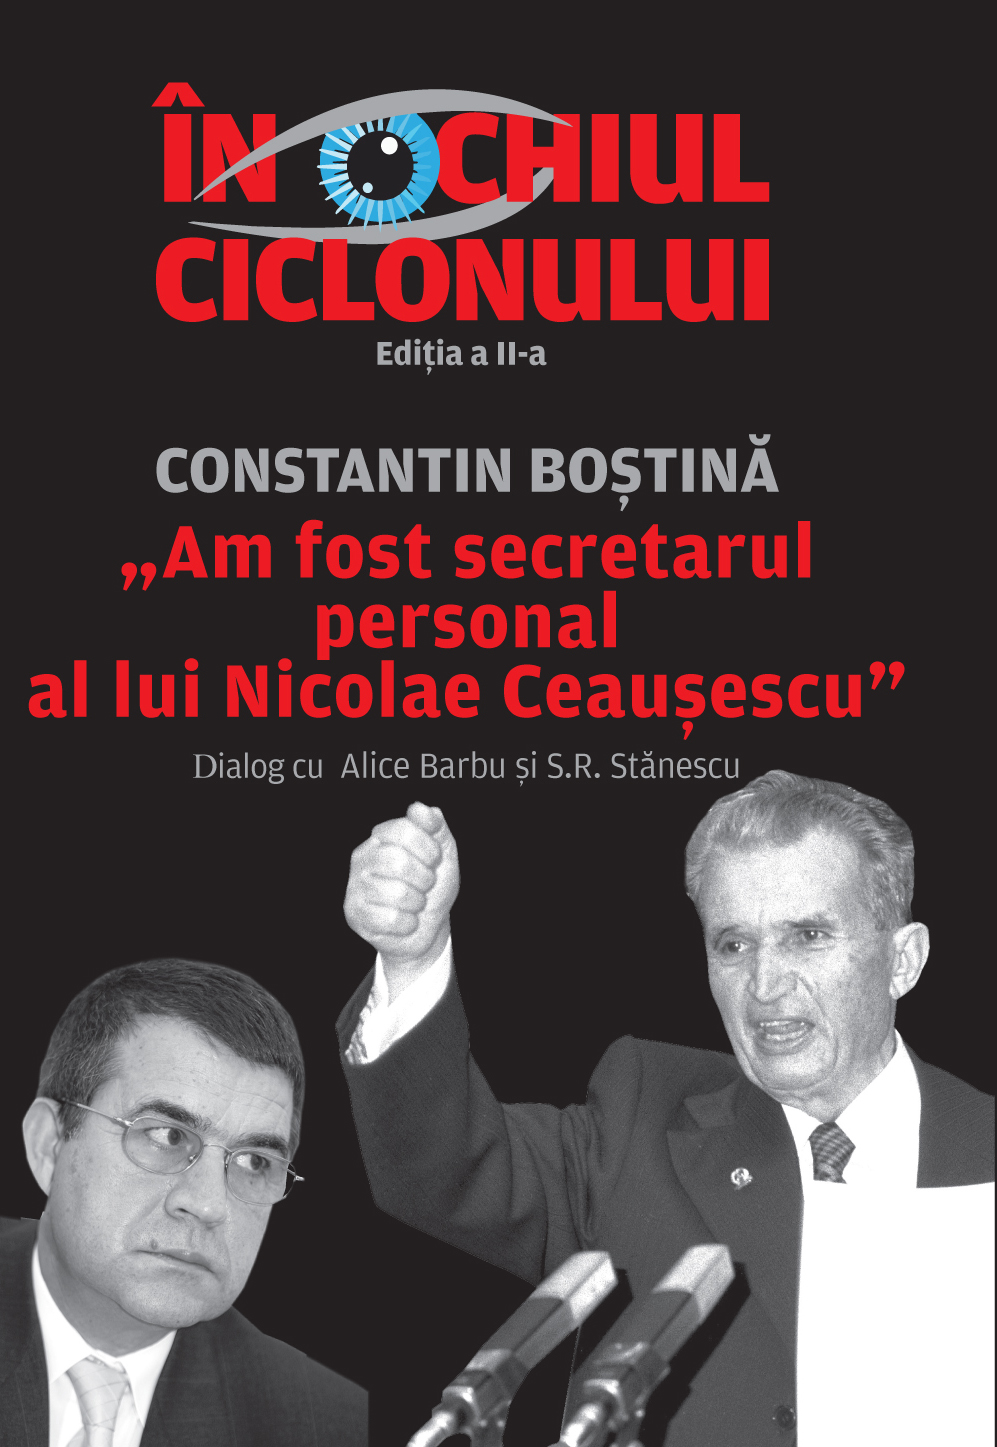 În Ochiul Ciclonului, un dialog spectaculos între Constantin Boștină, fostul secretar personal al lui Nicolae Ceaușescu, și Sorin Roșca Stănescu alături de Alice Barbu. 